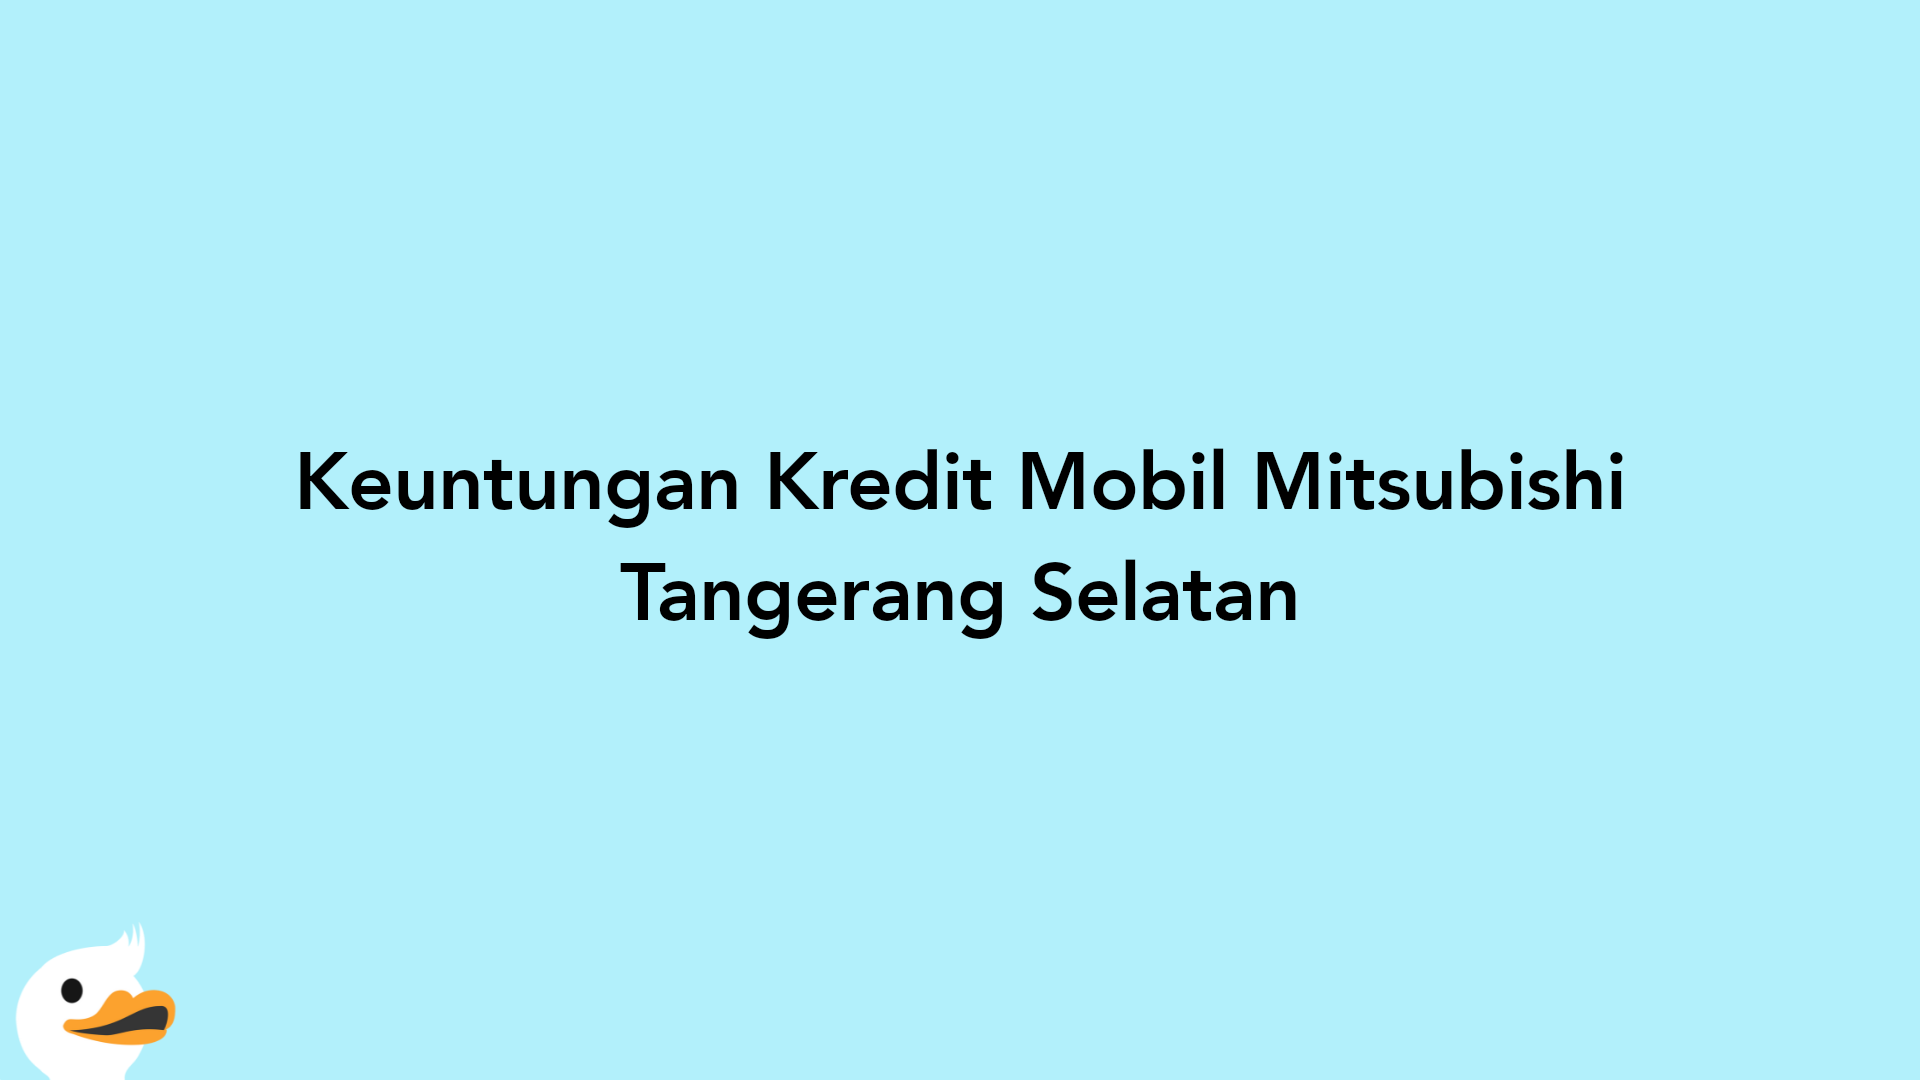 Keuntungan Kredit Mobil Mitsubishi Tangerang Selatan